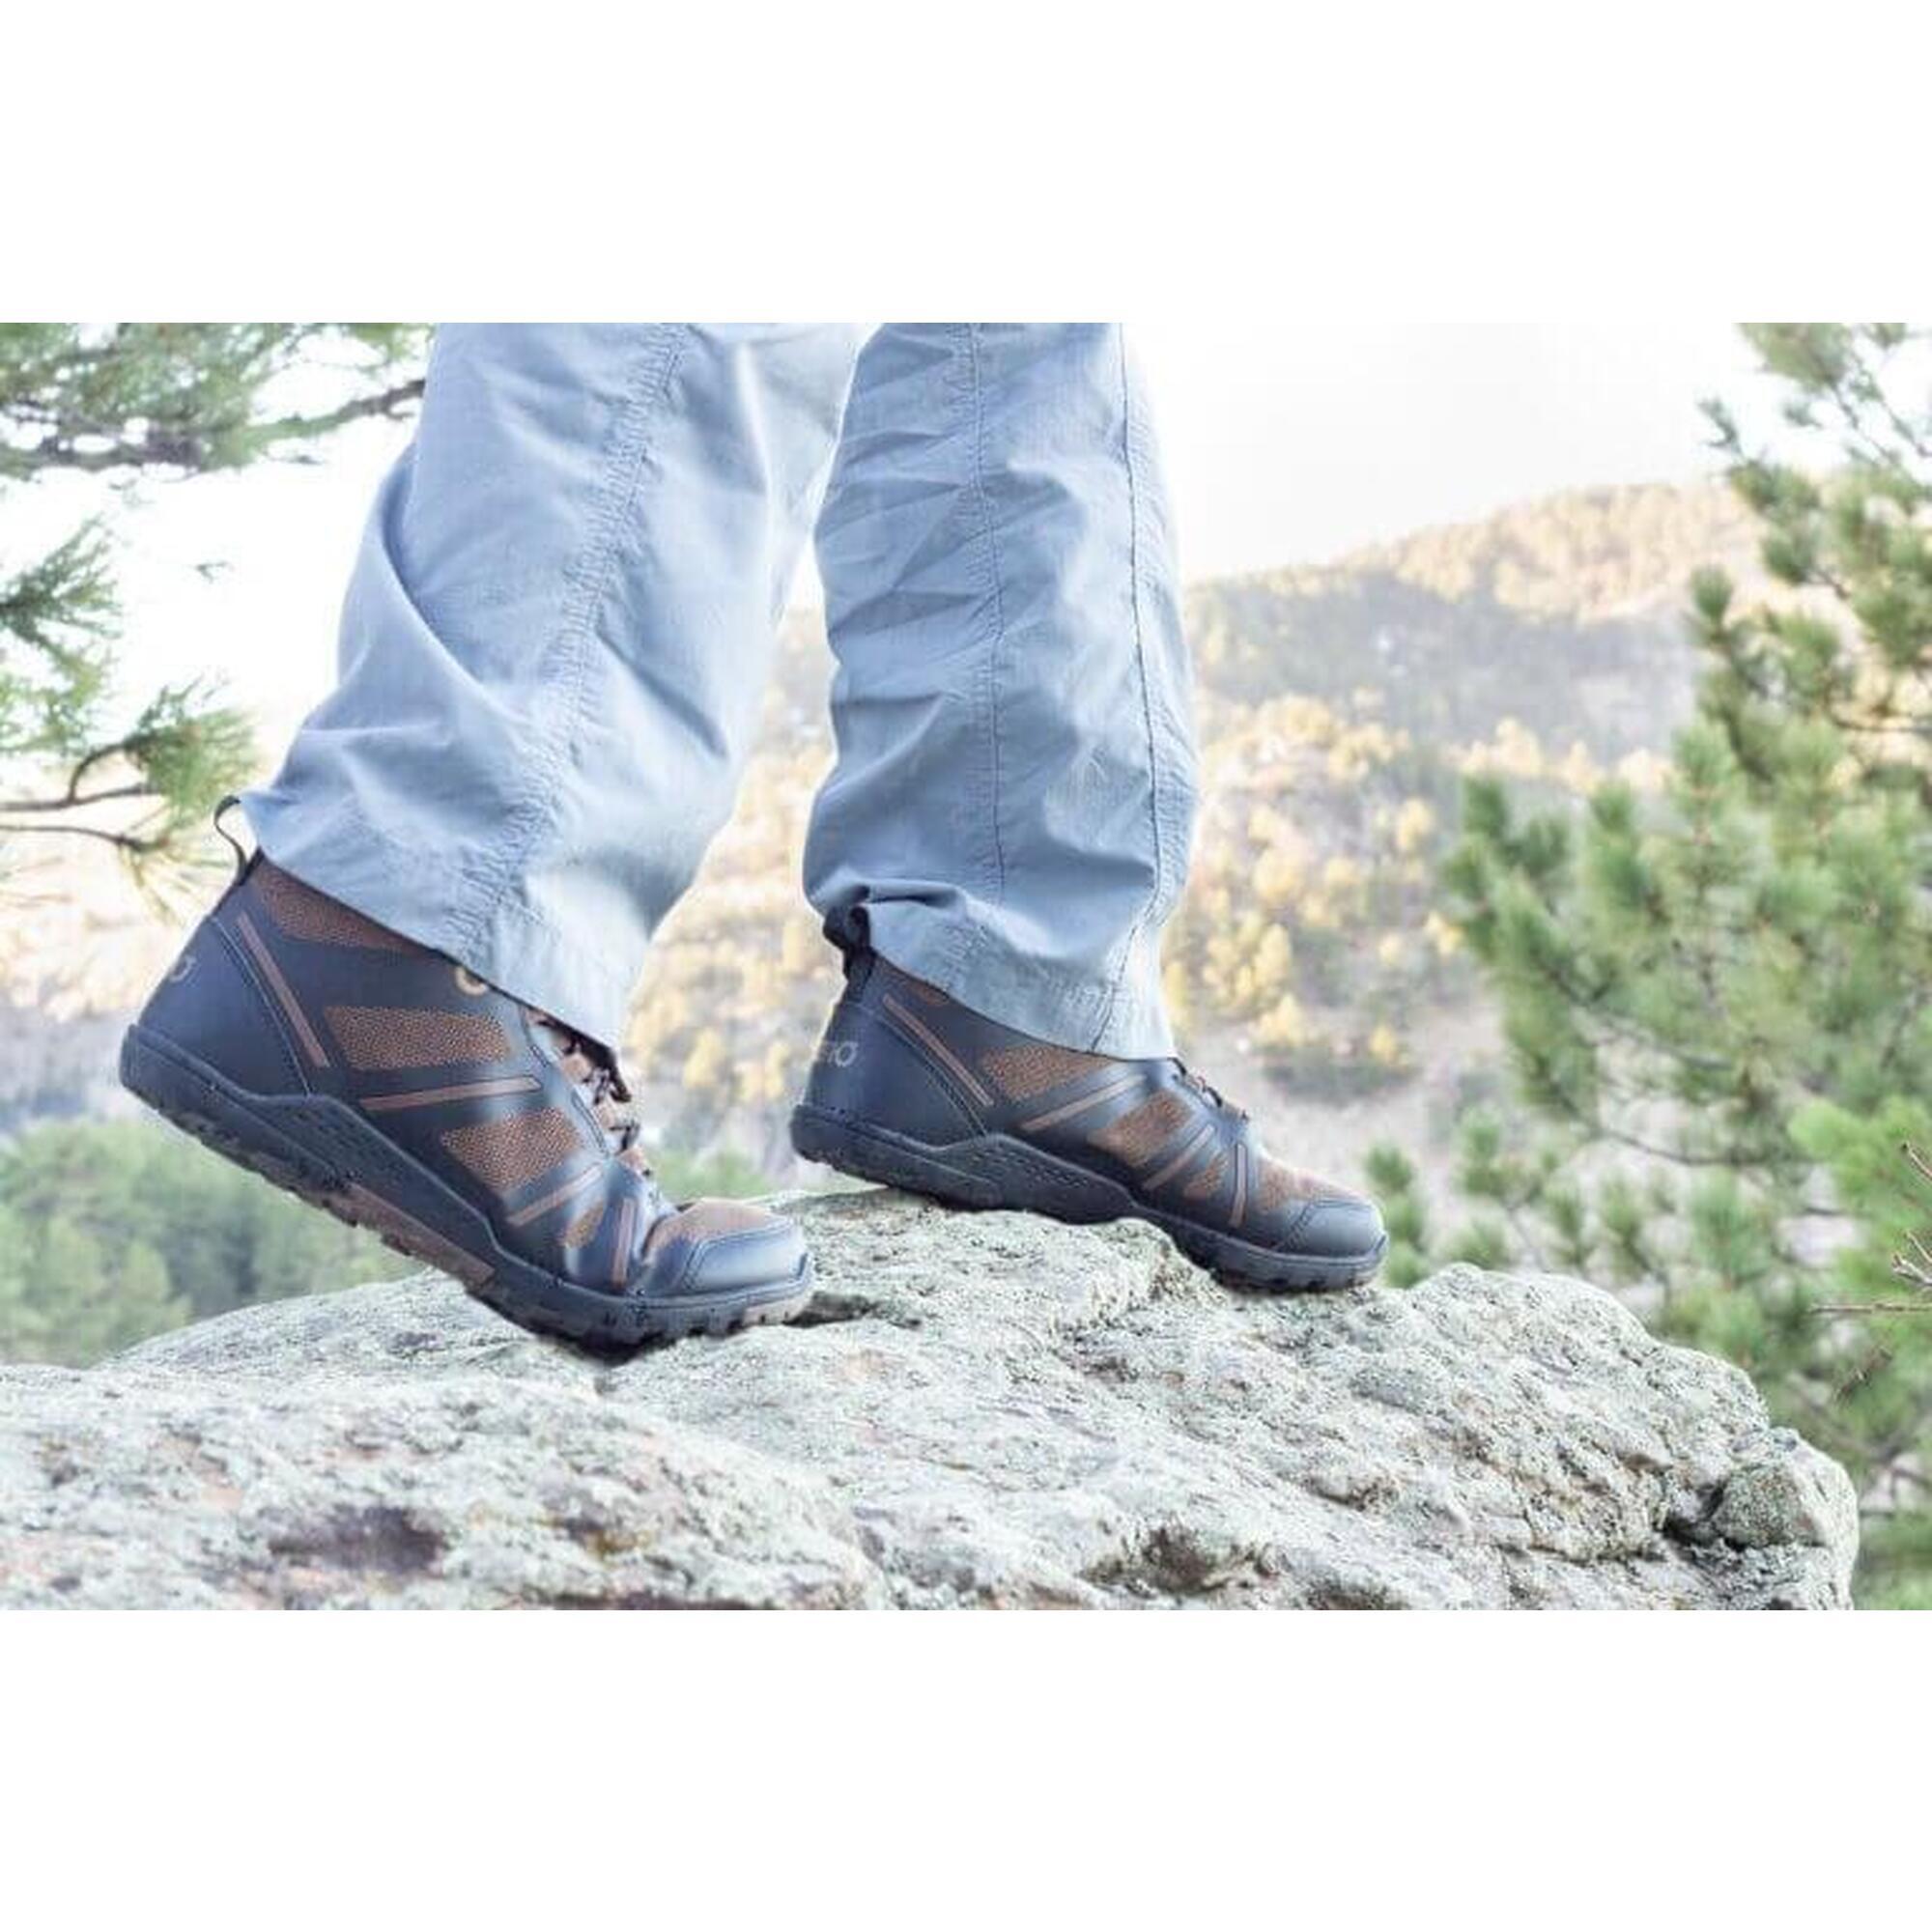 Xero Shoes DayLite Hiker Fusion Chaussure de Randonnée - Asphalte